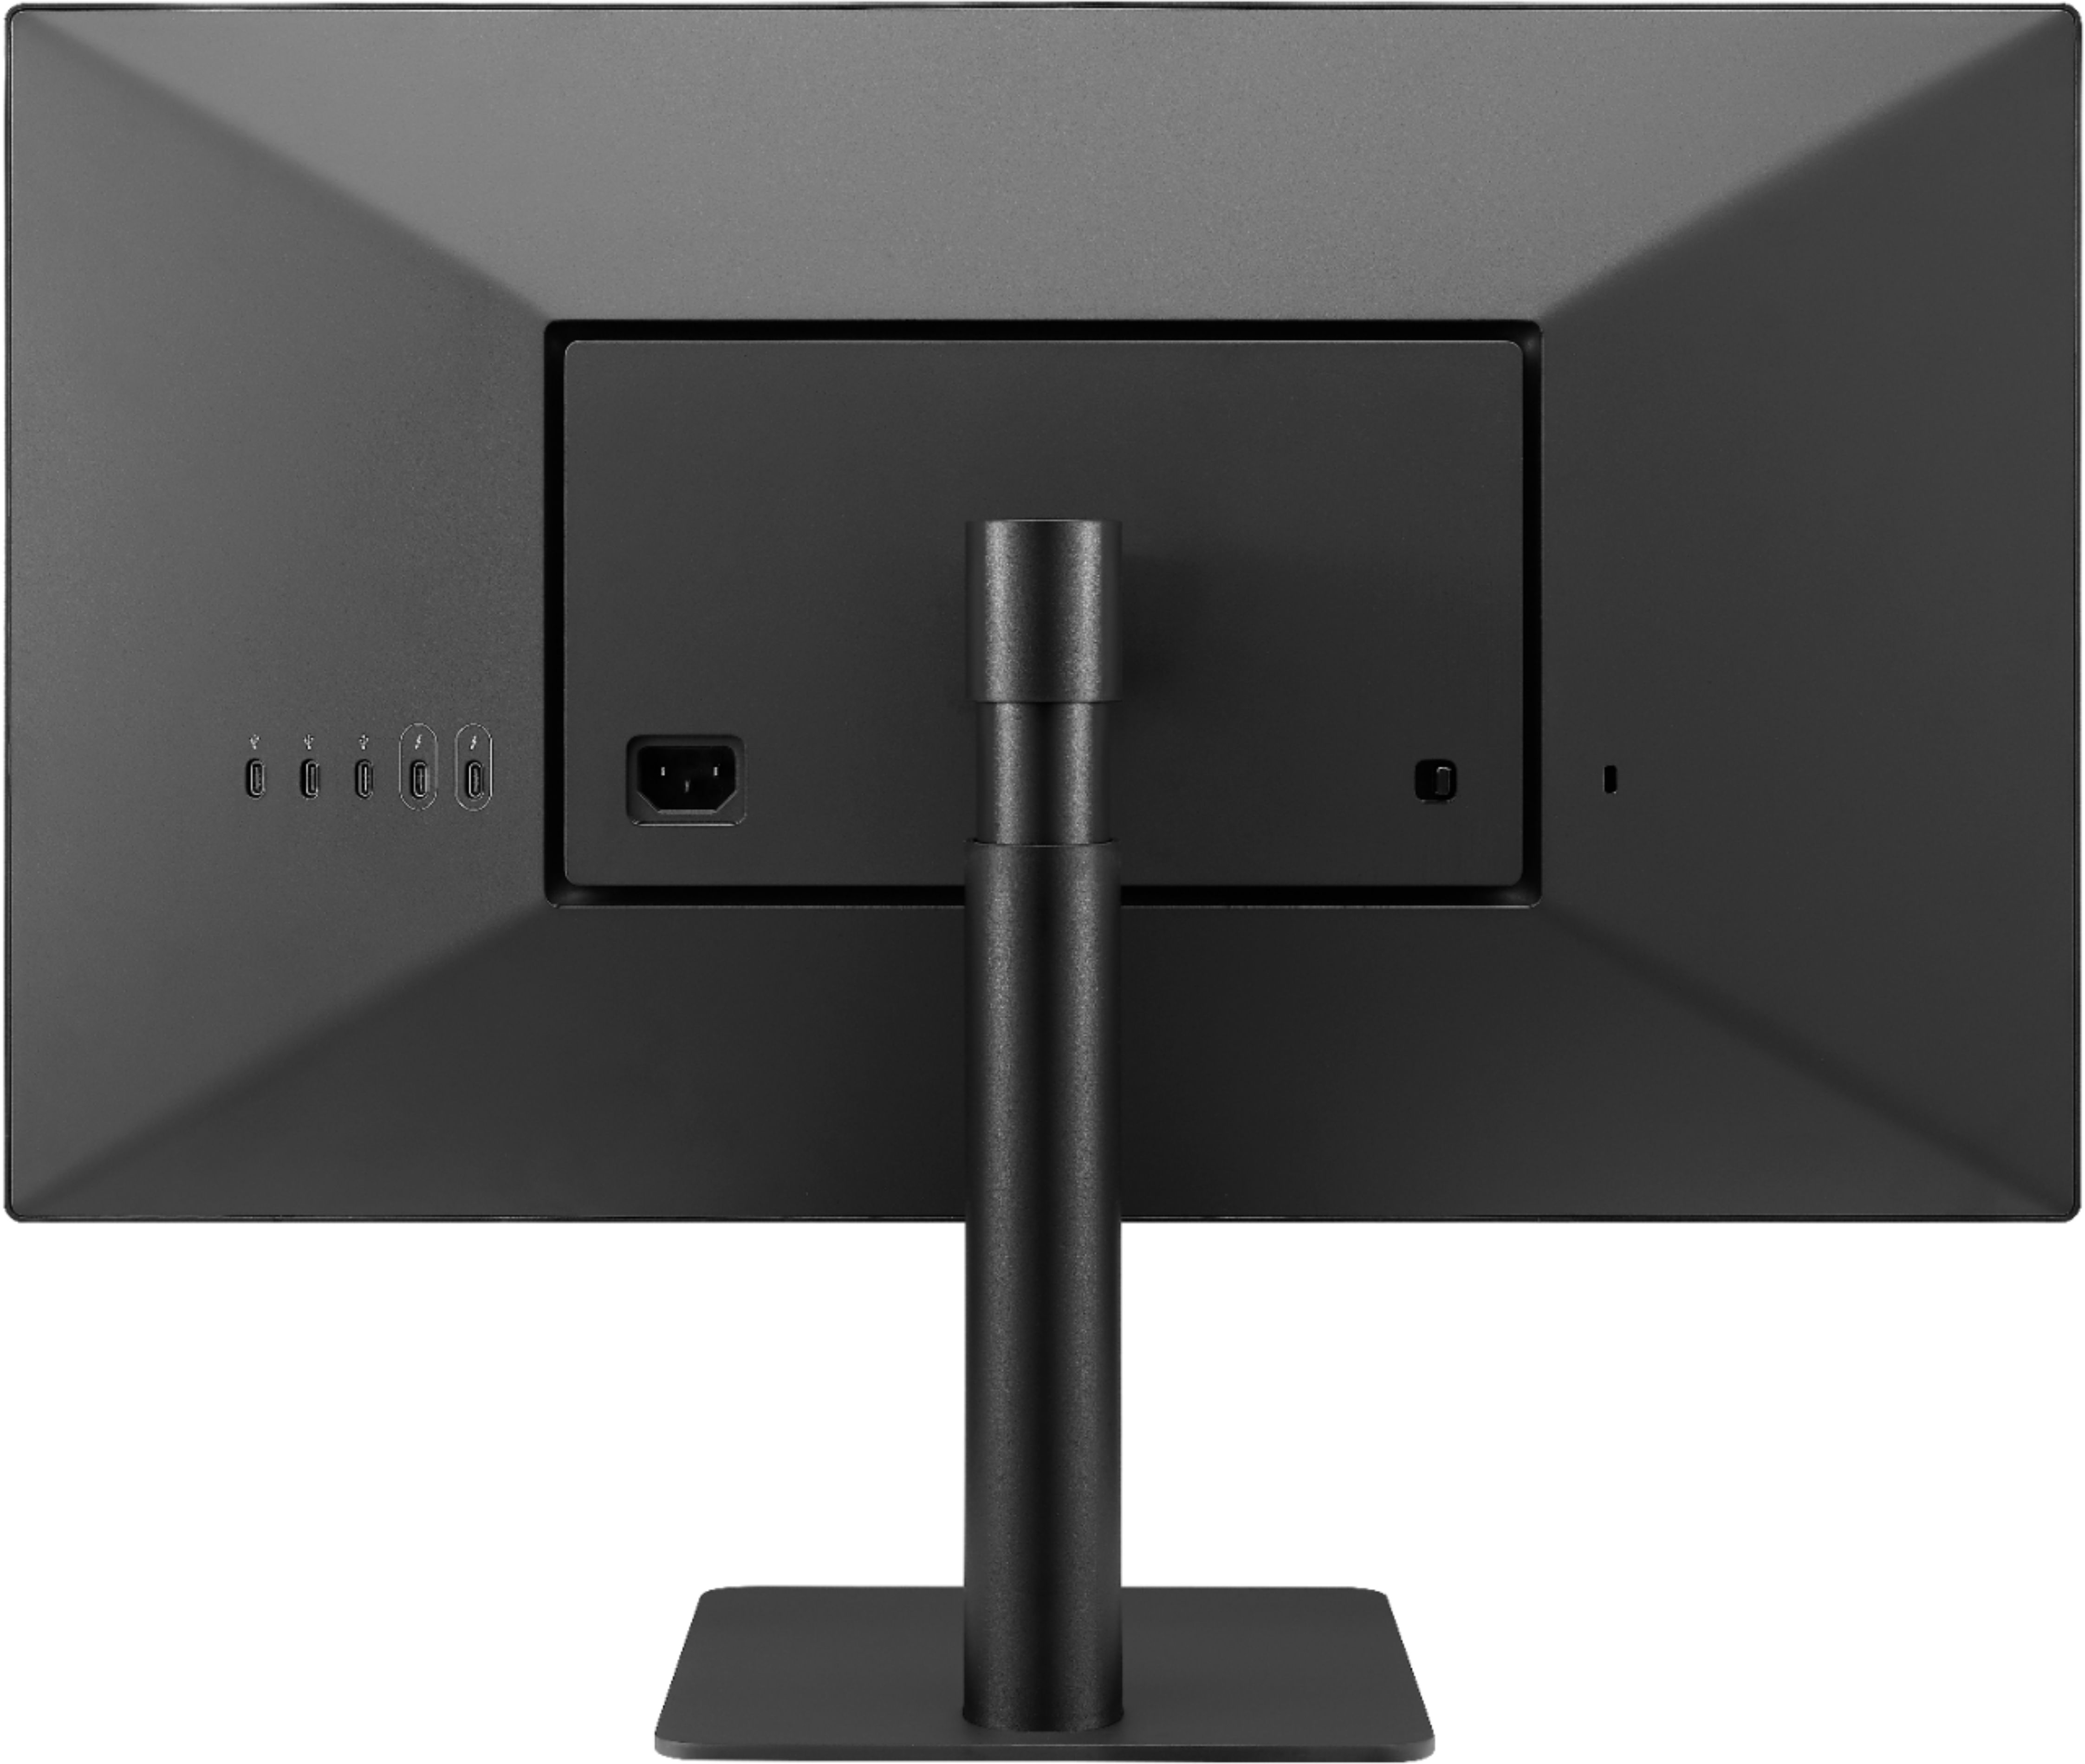 Back View: LG - UltraFine 24" IPS LED 4K UHD Monitor (Thunderbolt) - Black